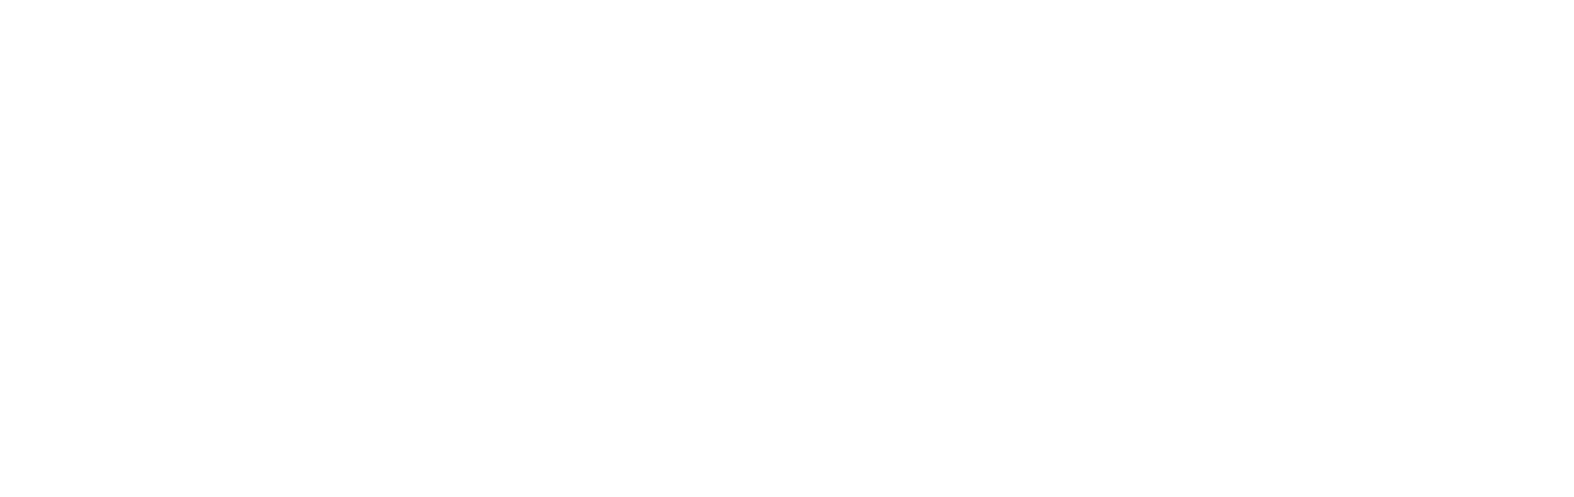 CorpHousing Group logo grand pour les fonds sombres (PNG transparent)